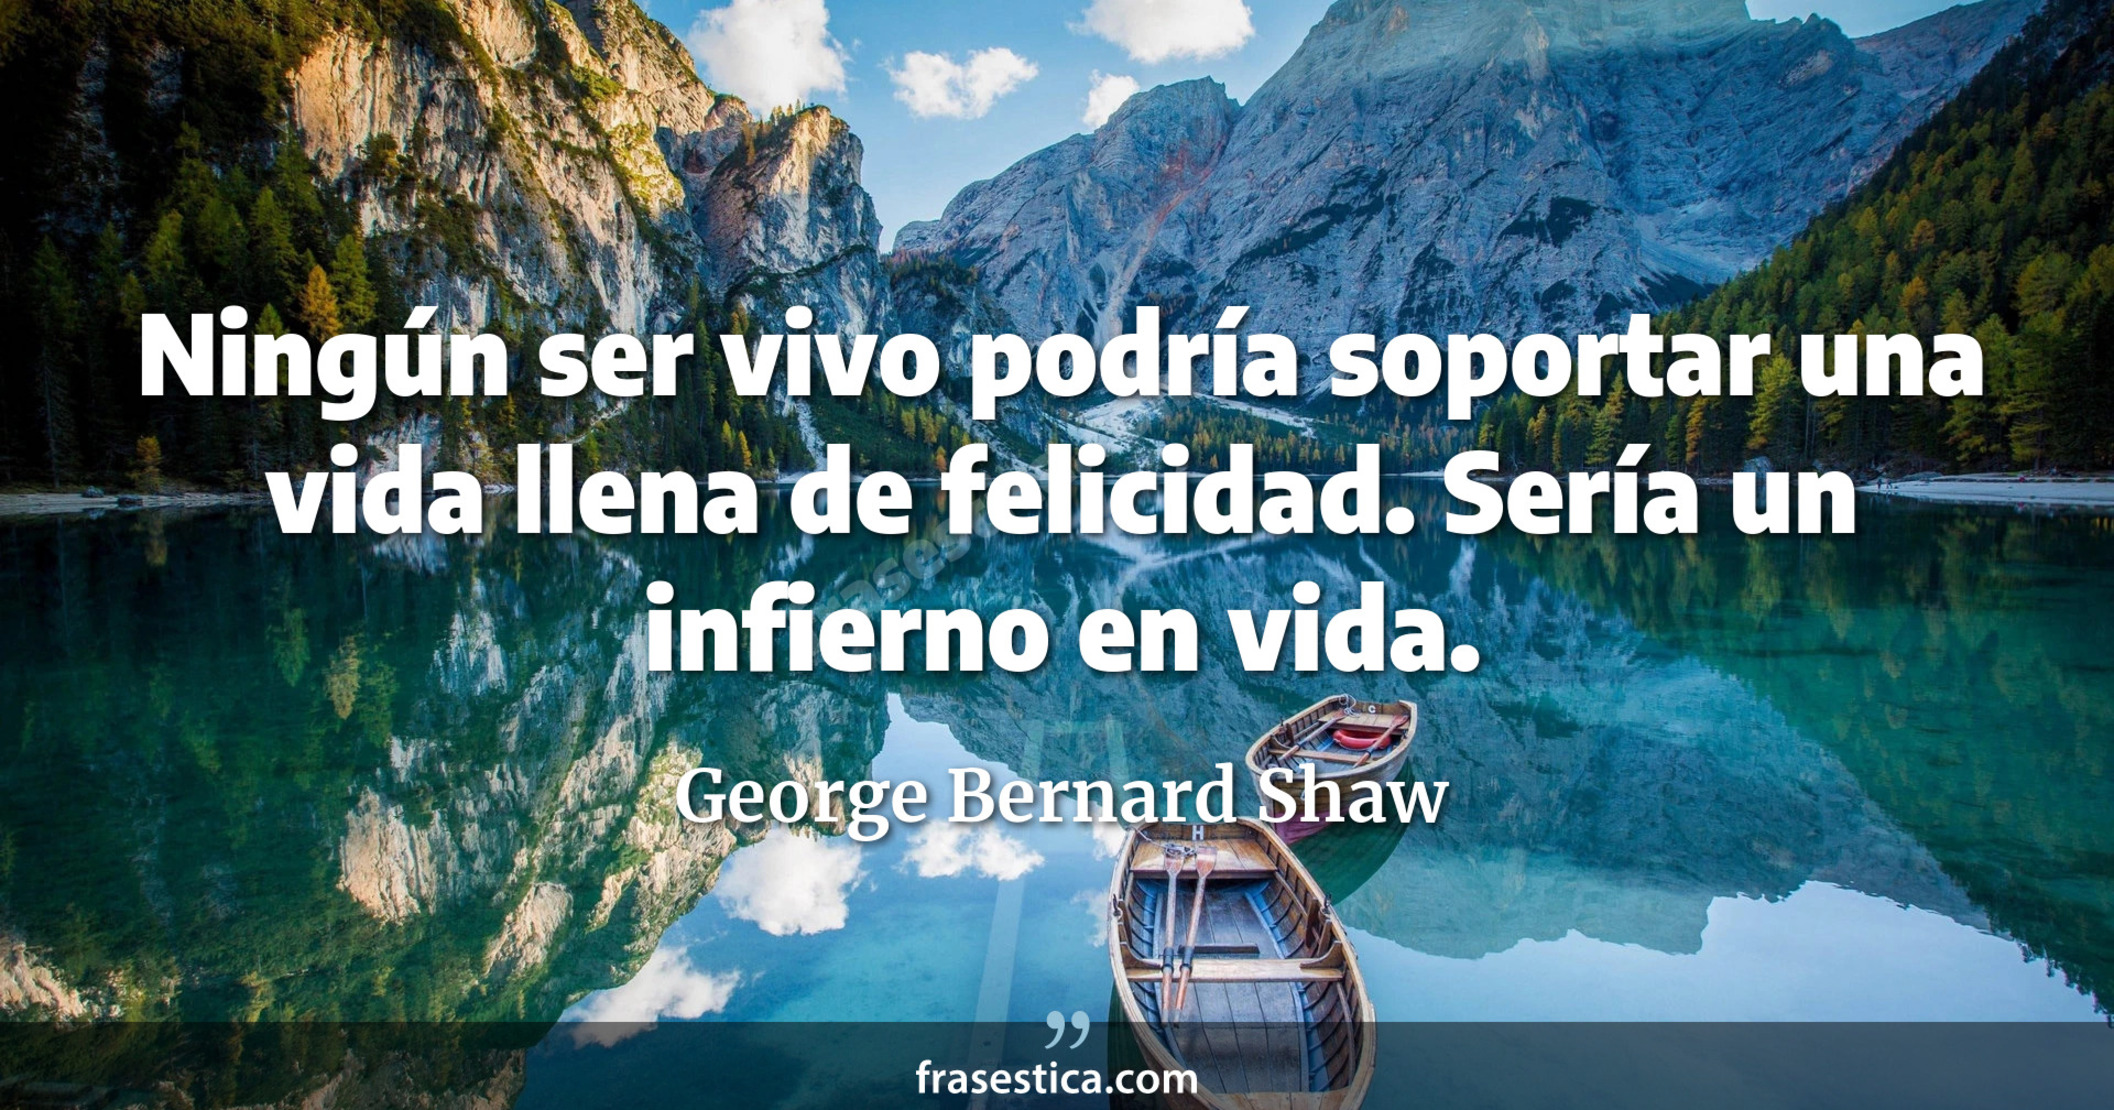 Ningún ser vivo podría soportar una vida llena de felicidad. Sería un infierno en vida. - George Bernard Shaw